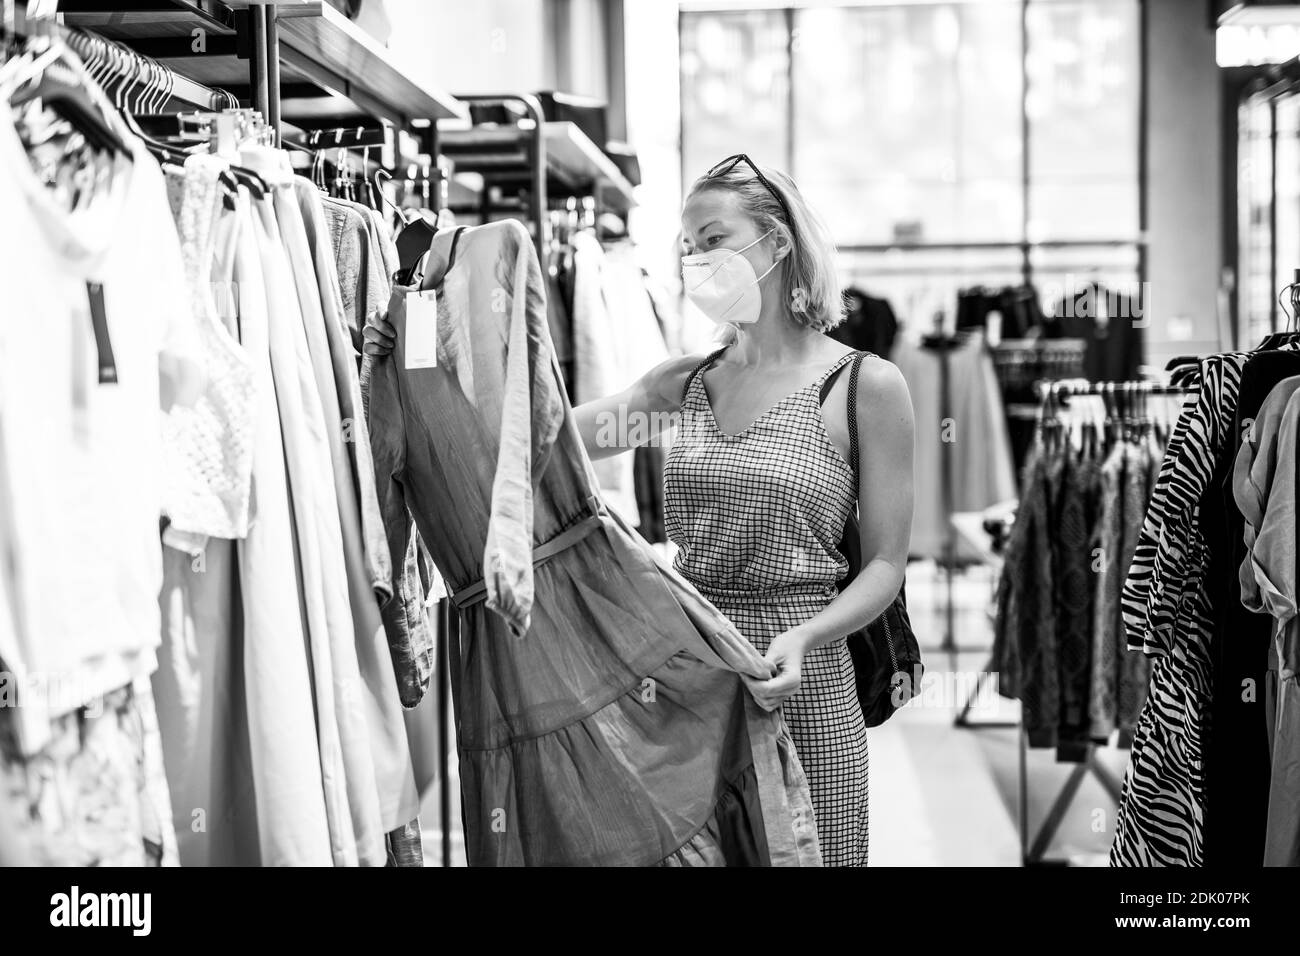 Chica en tienda de ropa Imágenes de stock en blanco y negro - Alamy